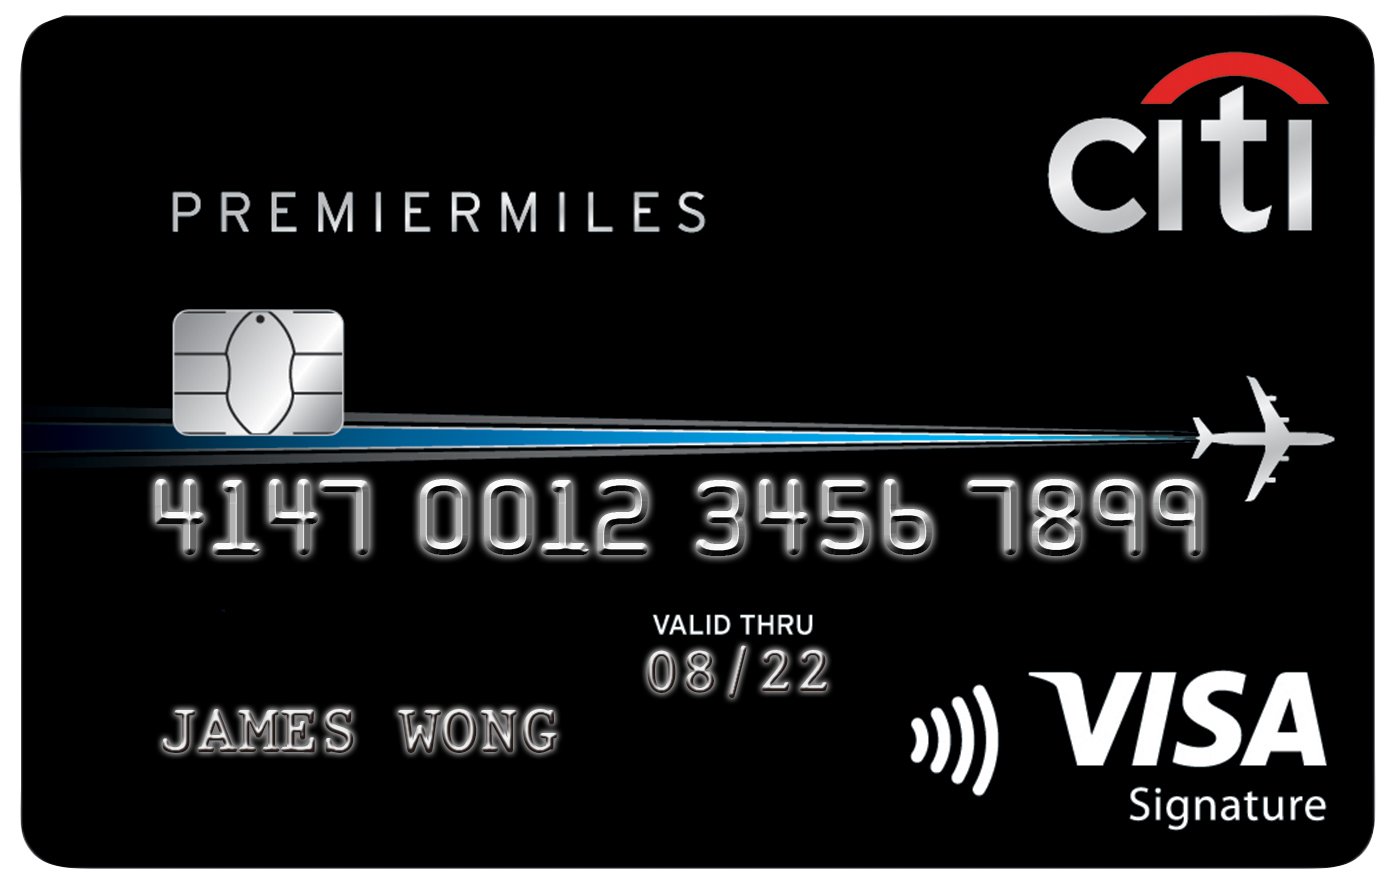 CITI-PremierMiles_Visa-Cardface-DI-Update_Dec-2017CITI-687_17-RGB-1